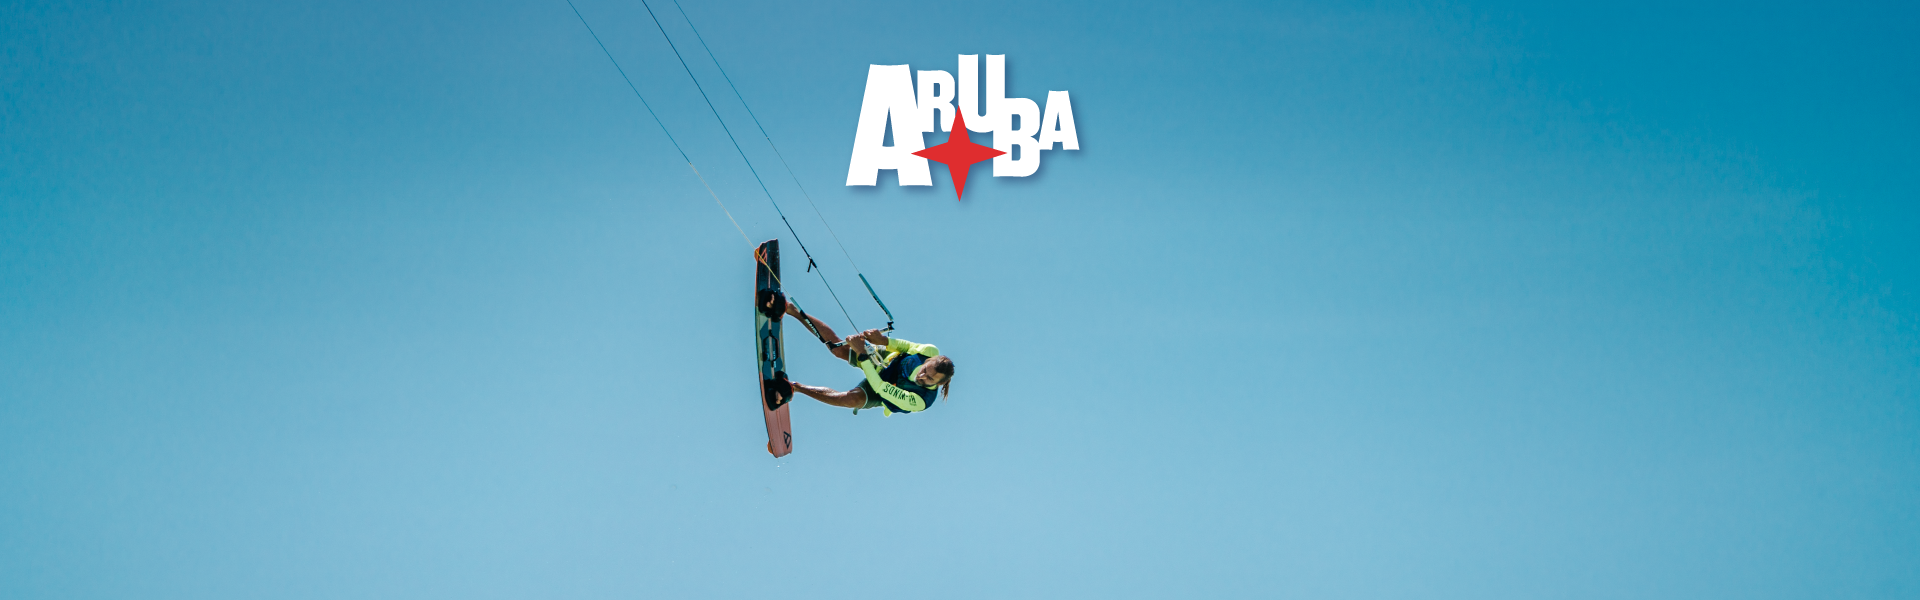 02 ARUBA ABRIL